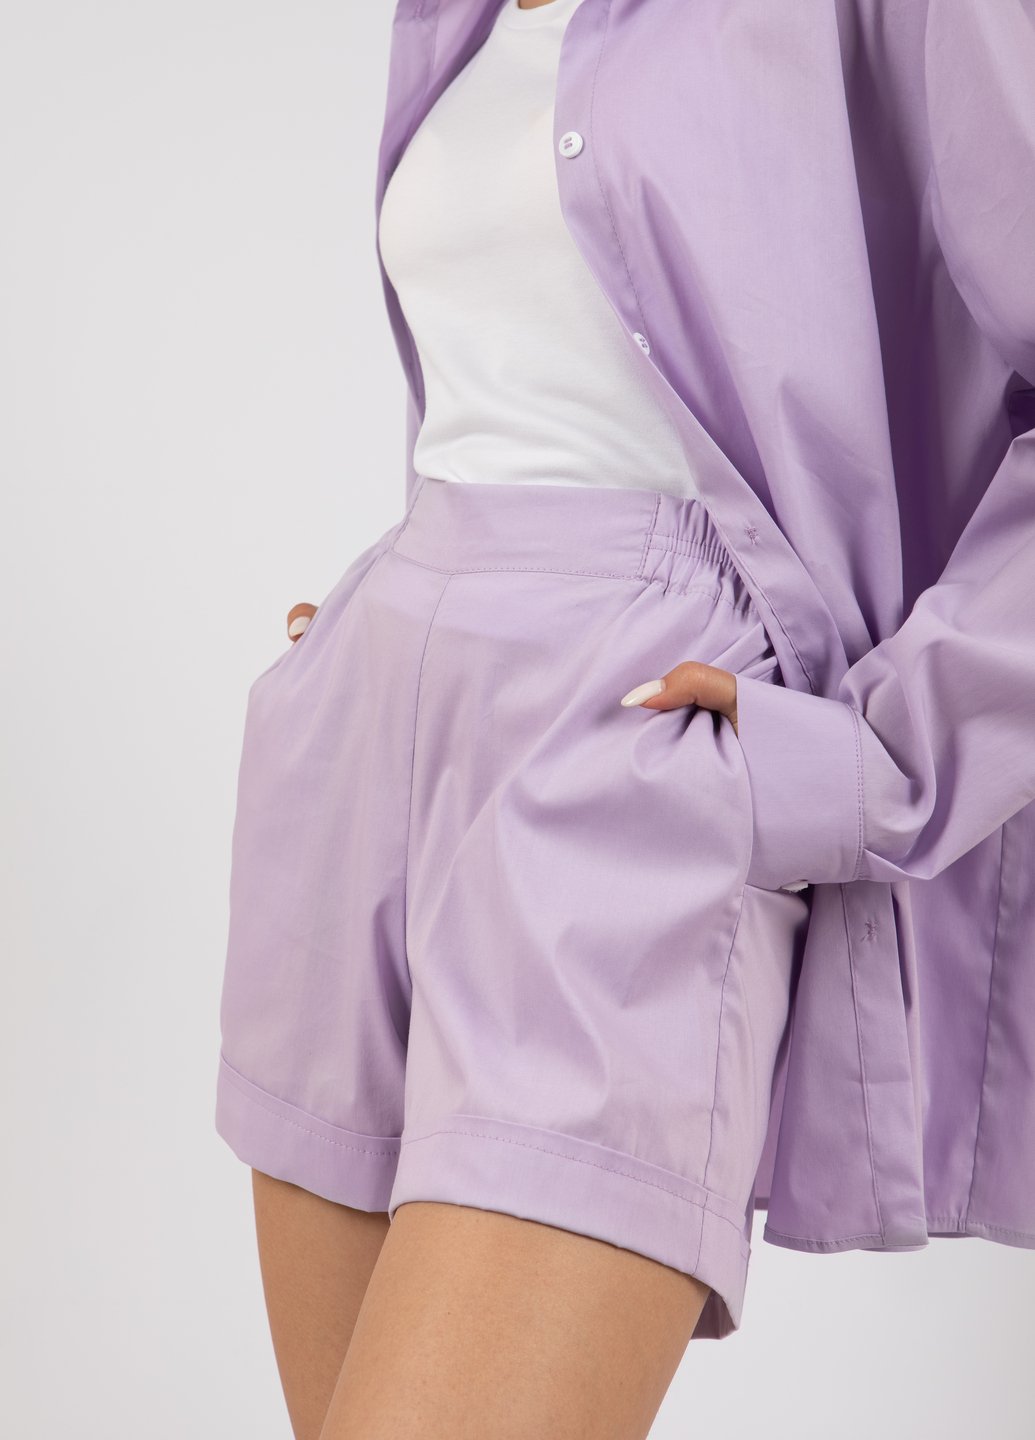 Купить Хлопковые шорты женские Merlini Тарент 300000015 - Сиреневый, 42-44 в интернет-магазине